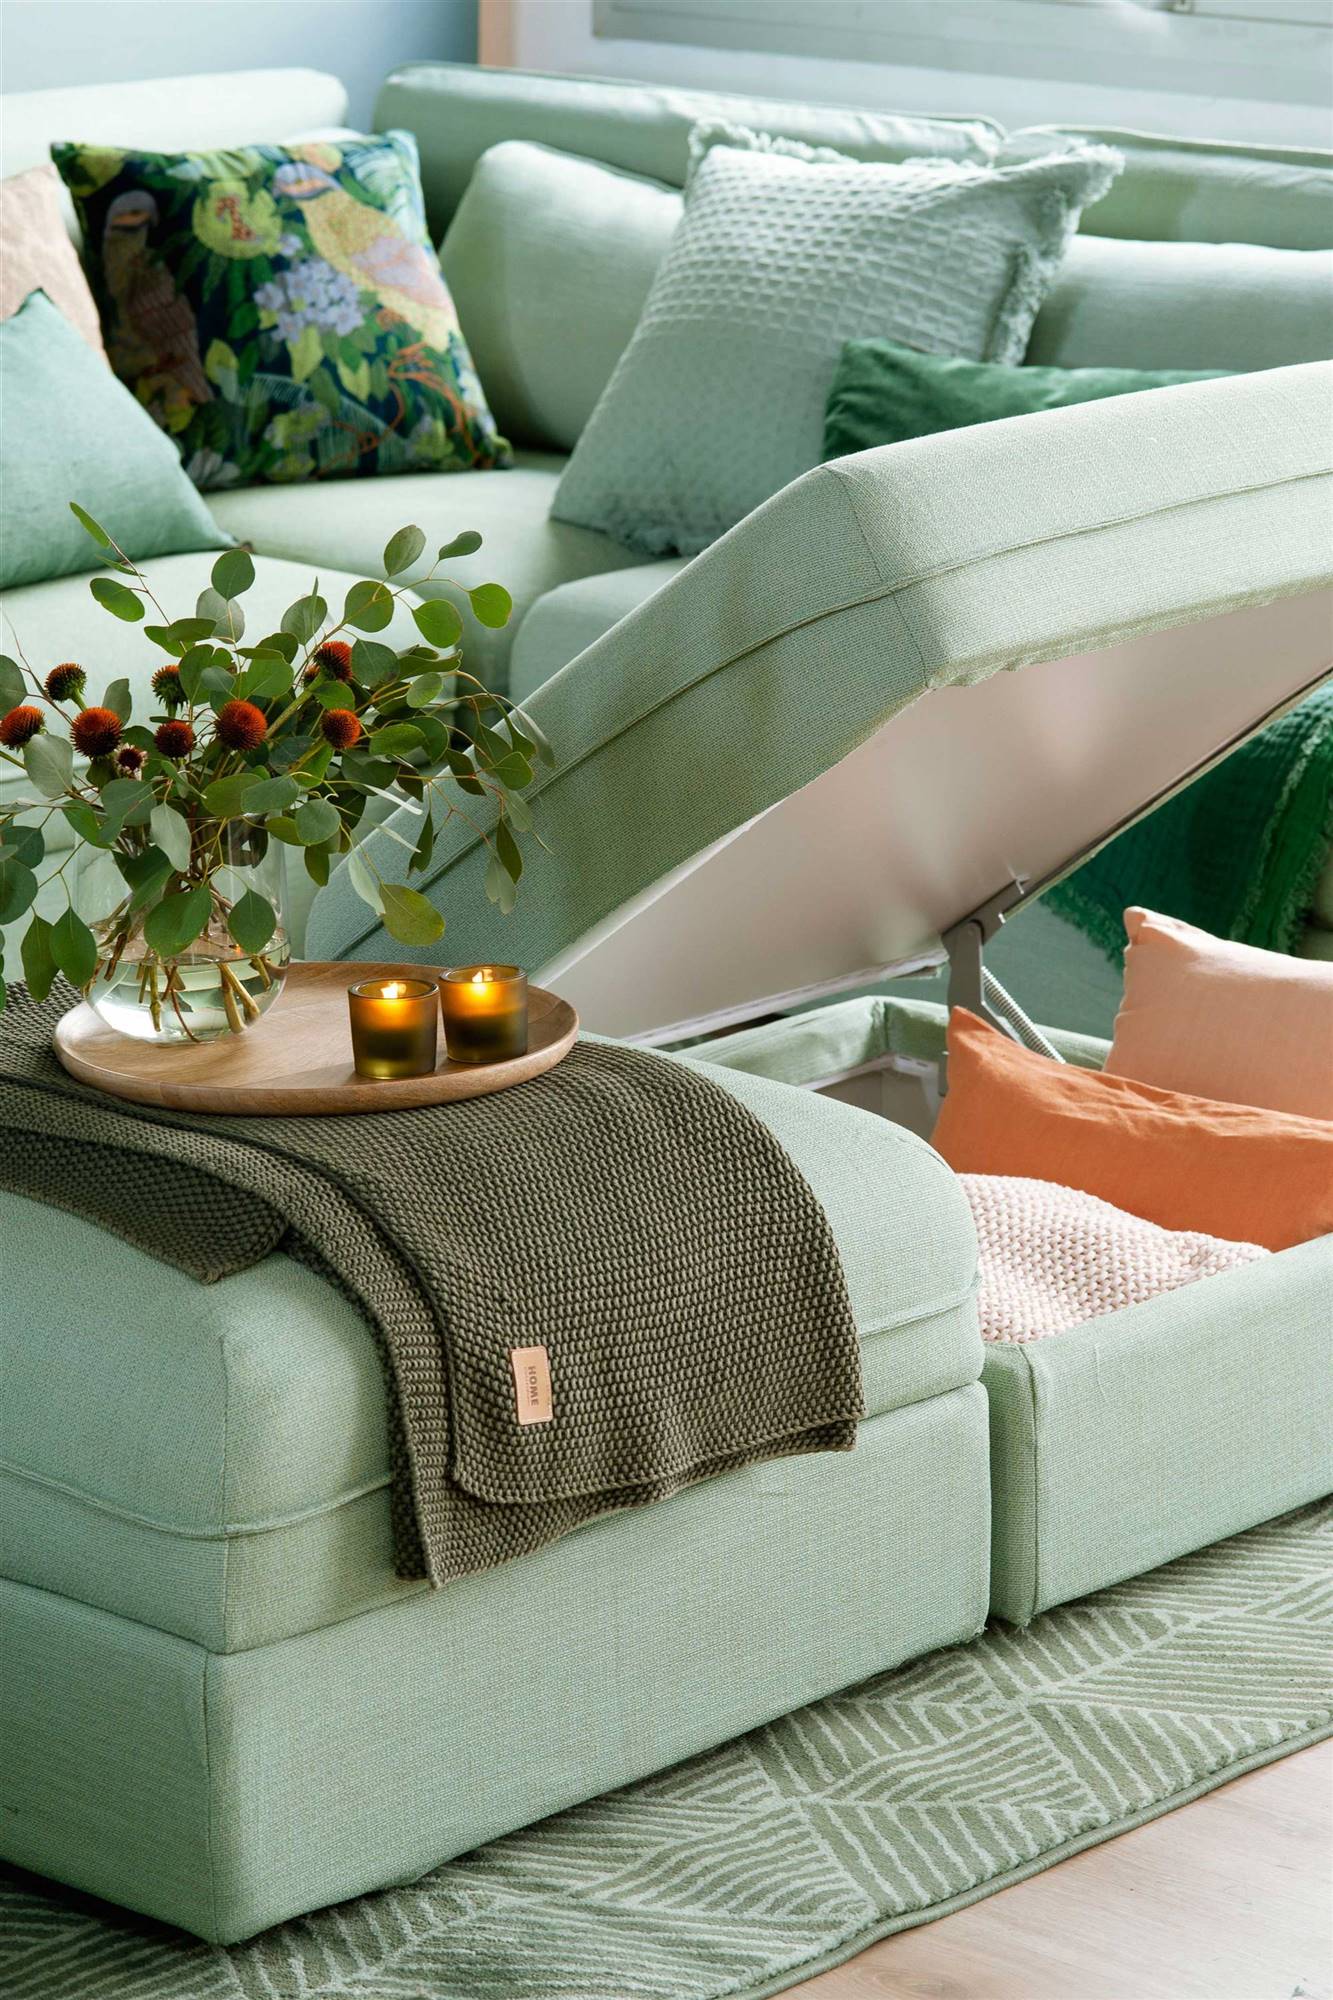 Detalle de un sofá con arcón de almacenaje que se abre mediante sistema hidráulico. 